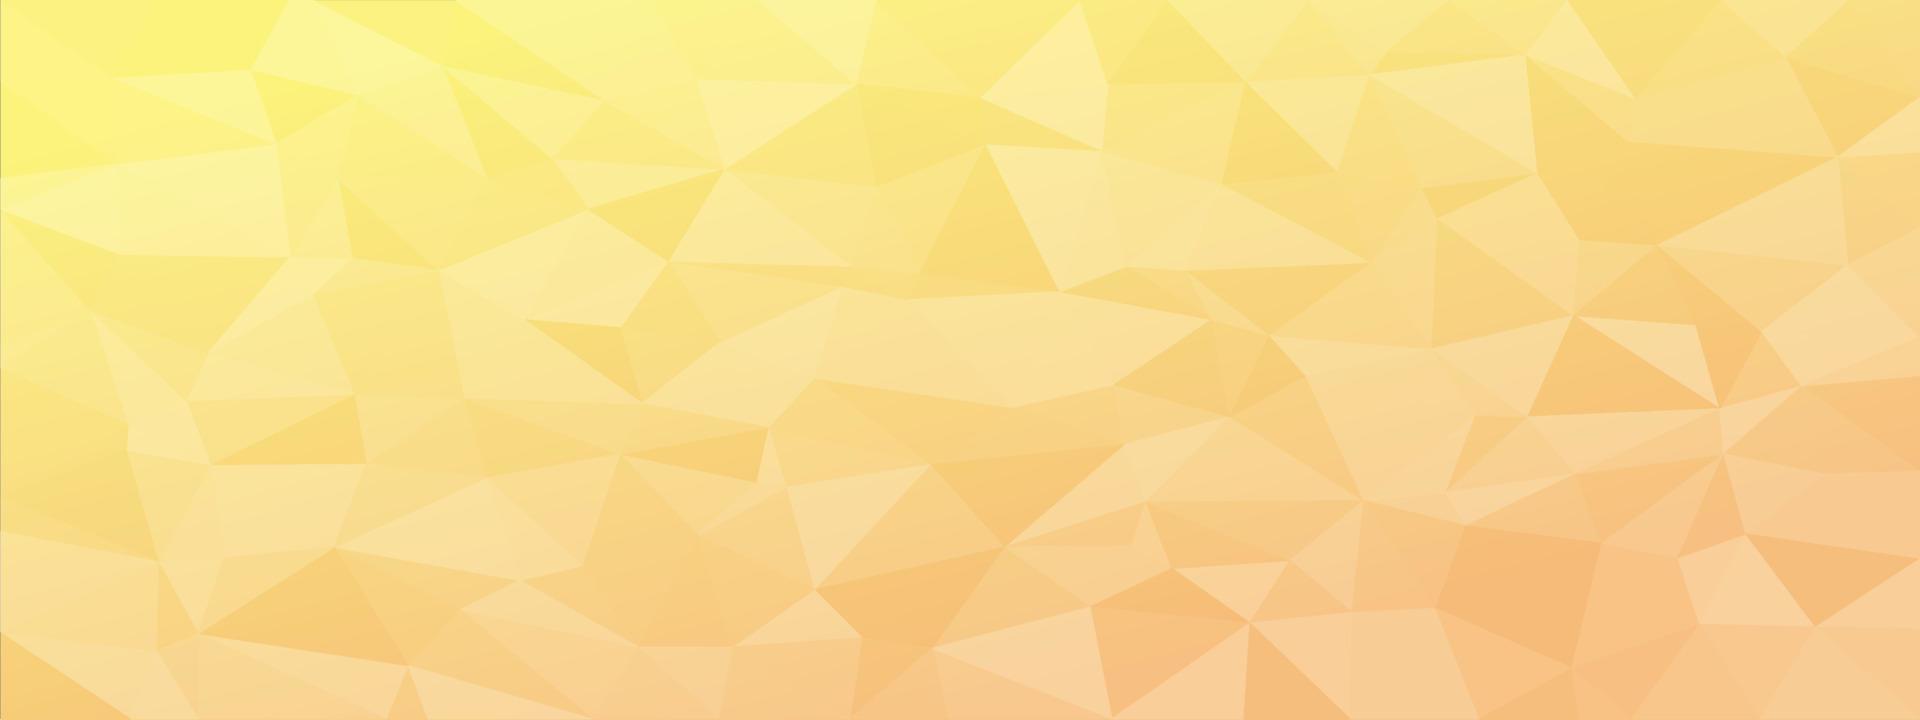 Low-Poly-abstrakter moderner Hintergrund. zarte Farben chaotische Dreiecke variabler Größe und Rotation. minimalistisches Layout für die Website-Broschüre der Visitenkarten-Landingpage-Tapete. trendiger Vektor eps10